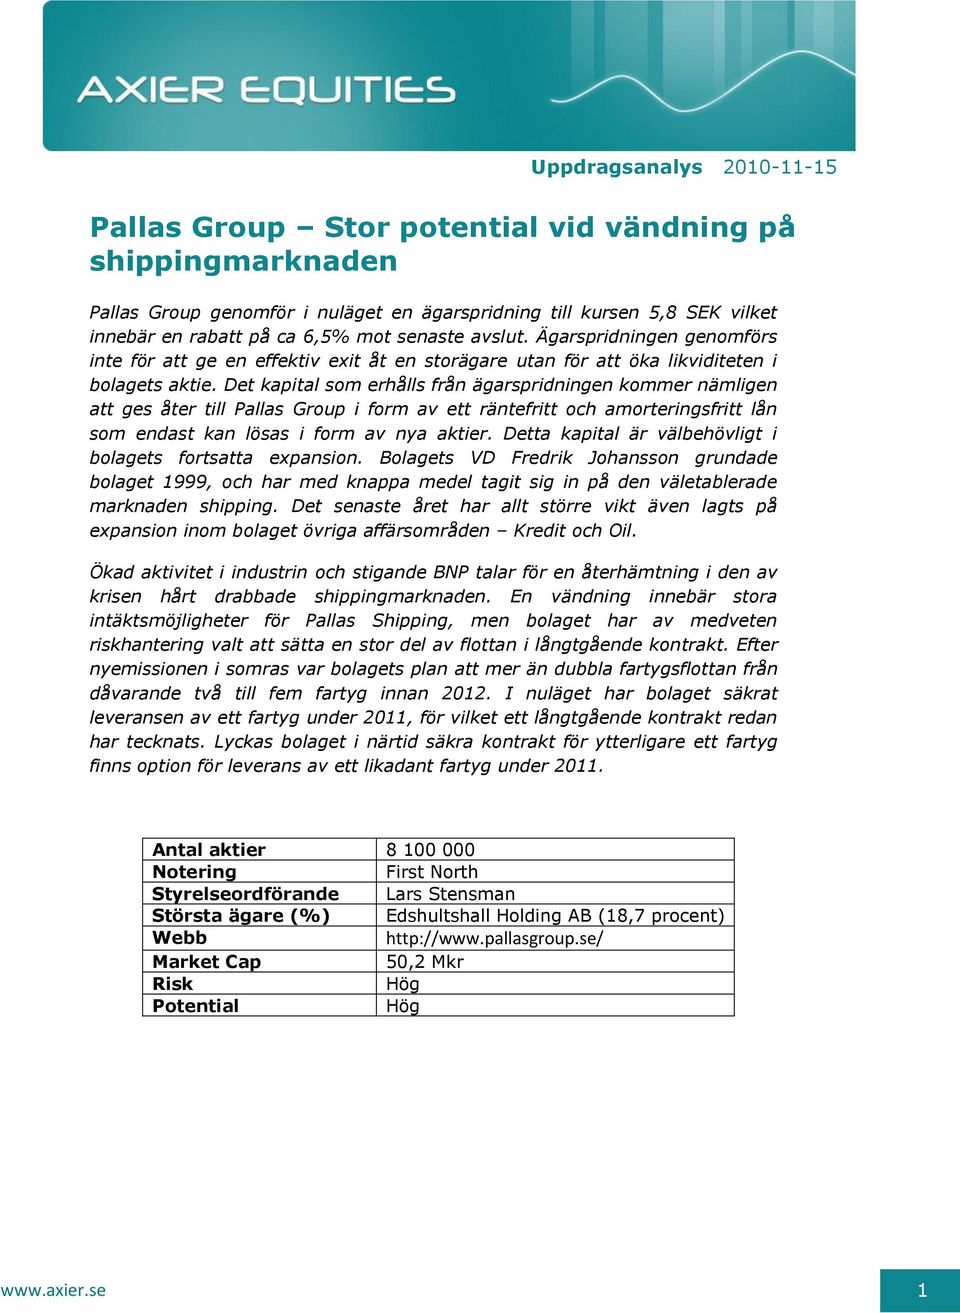 Pallas Group Stor potential vid vändning på shippingmarknaden - PDF Free  Download